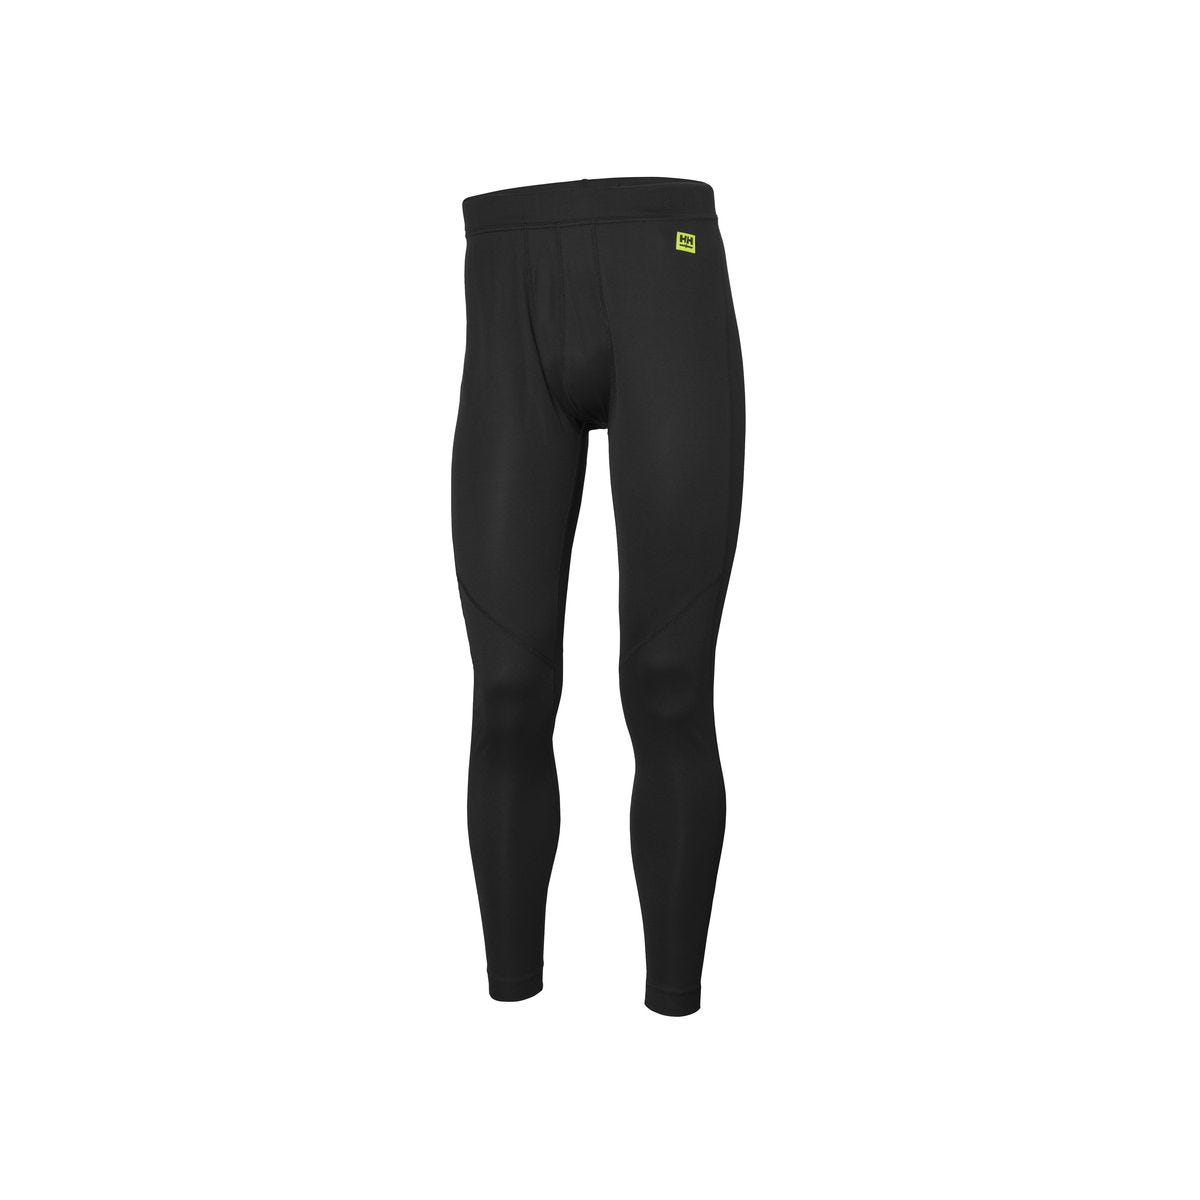 Pantalon sous-vêtement technique Lifa Noir - Helly Hansen - Taille M 0